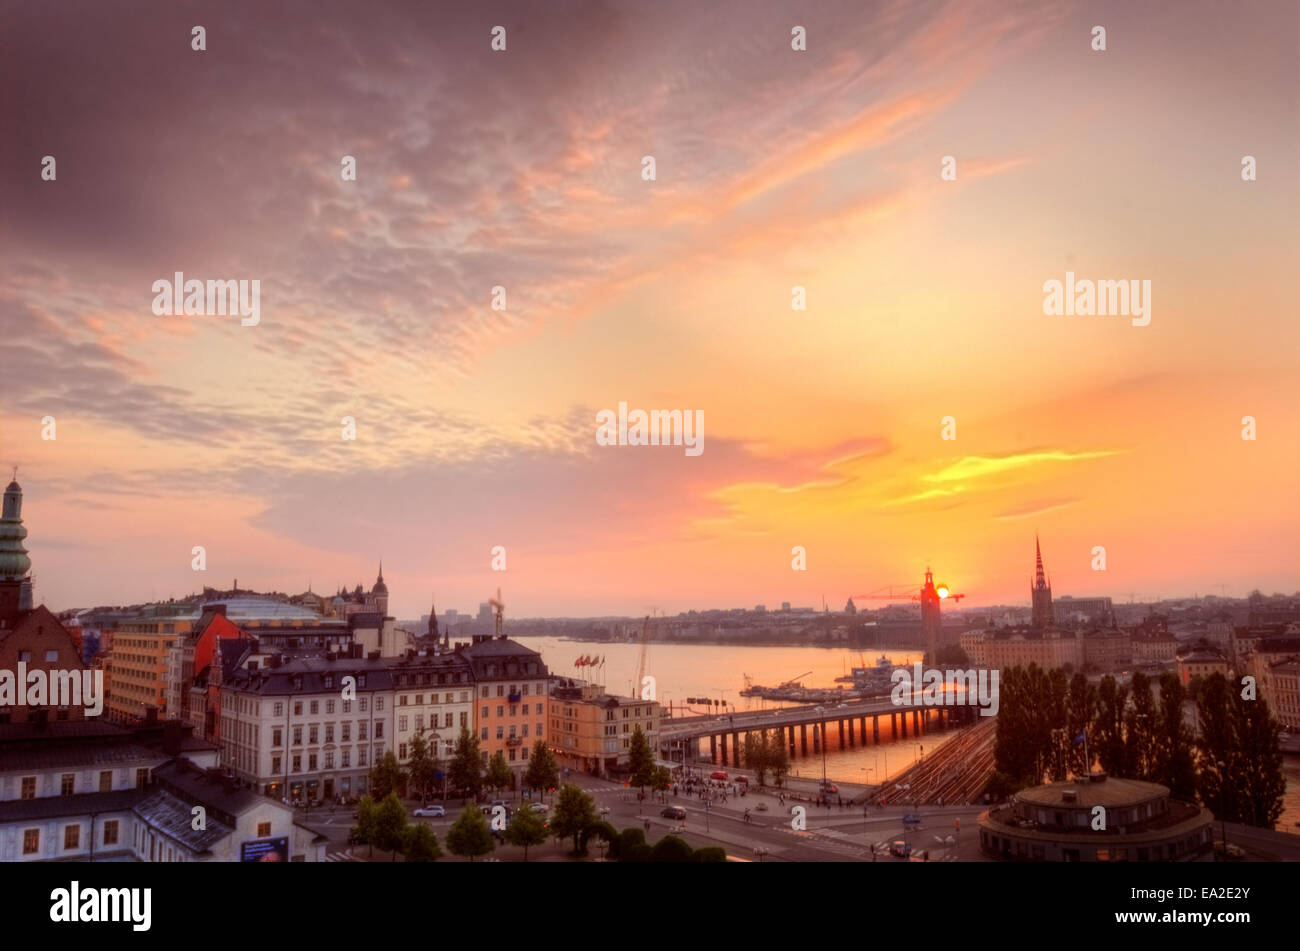 Skandinavien. Panorama von Stockholm am schönen Sonnenuntergang Landschaft. Stockfoto